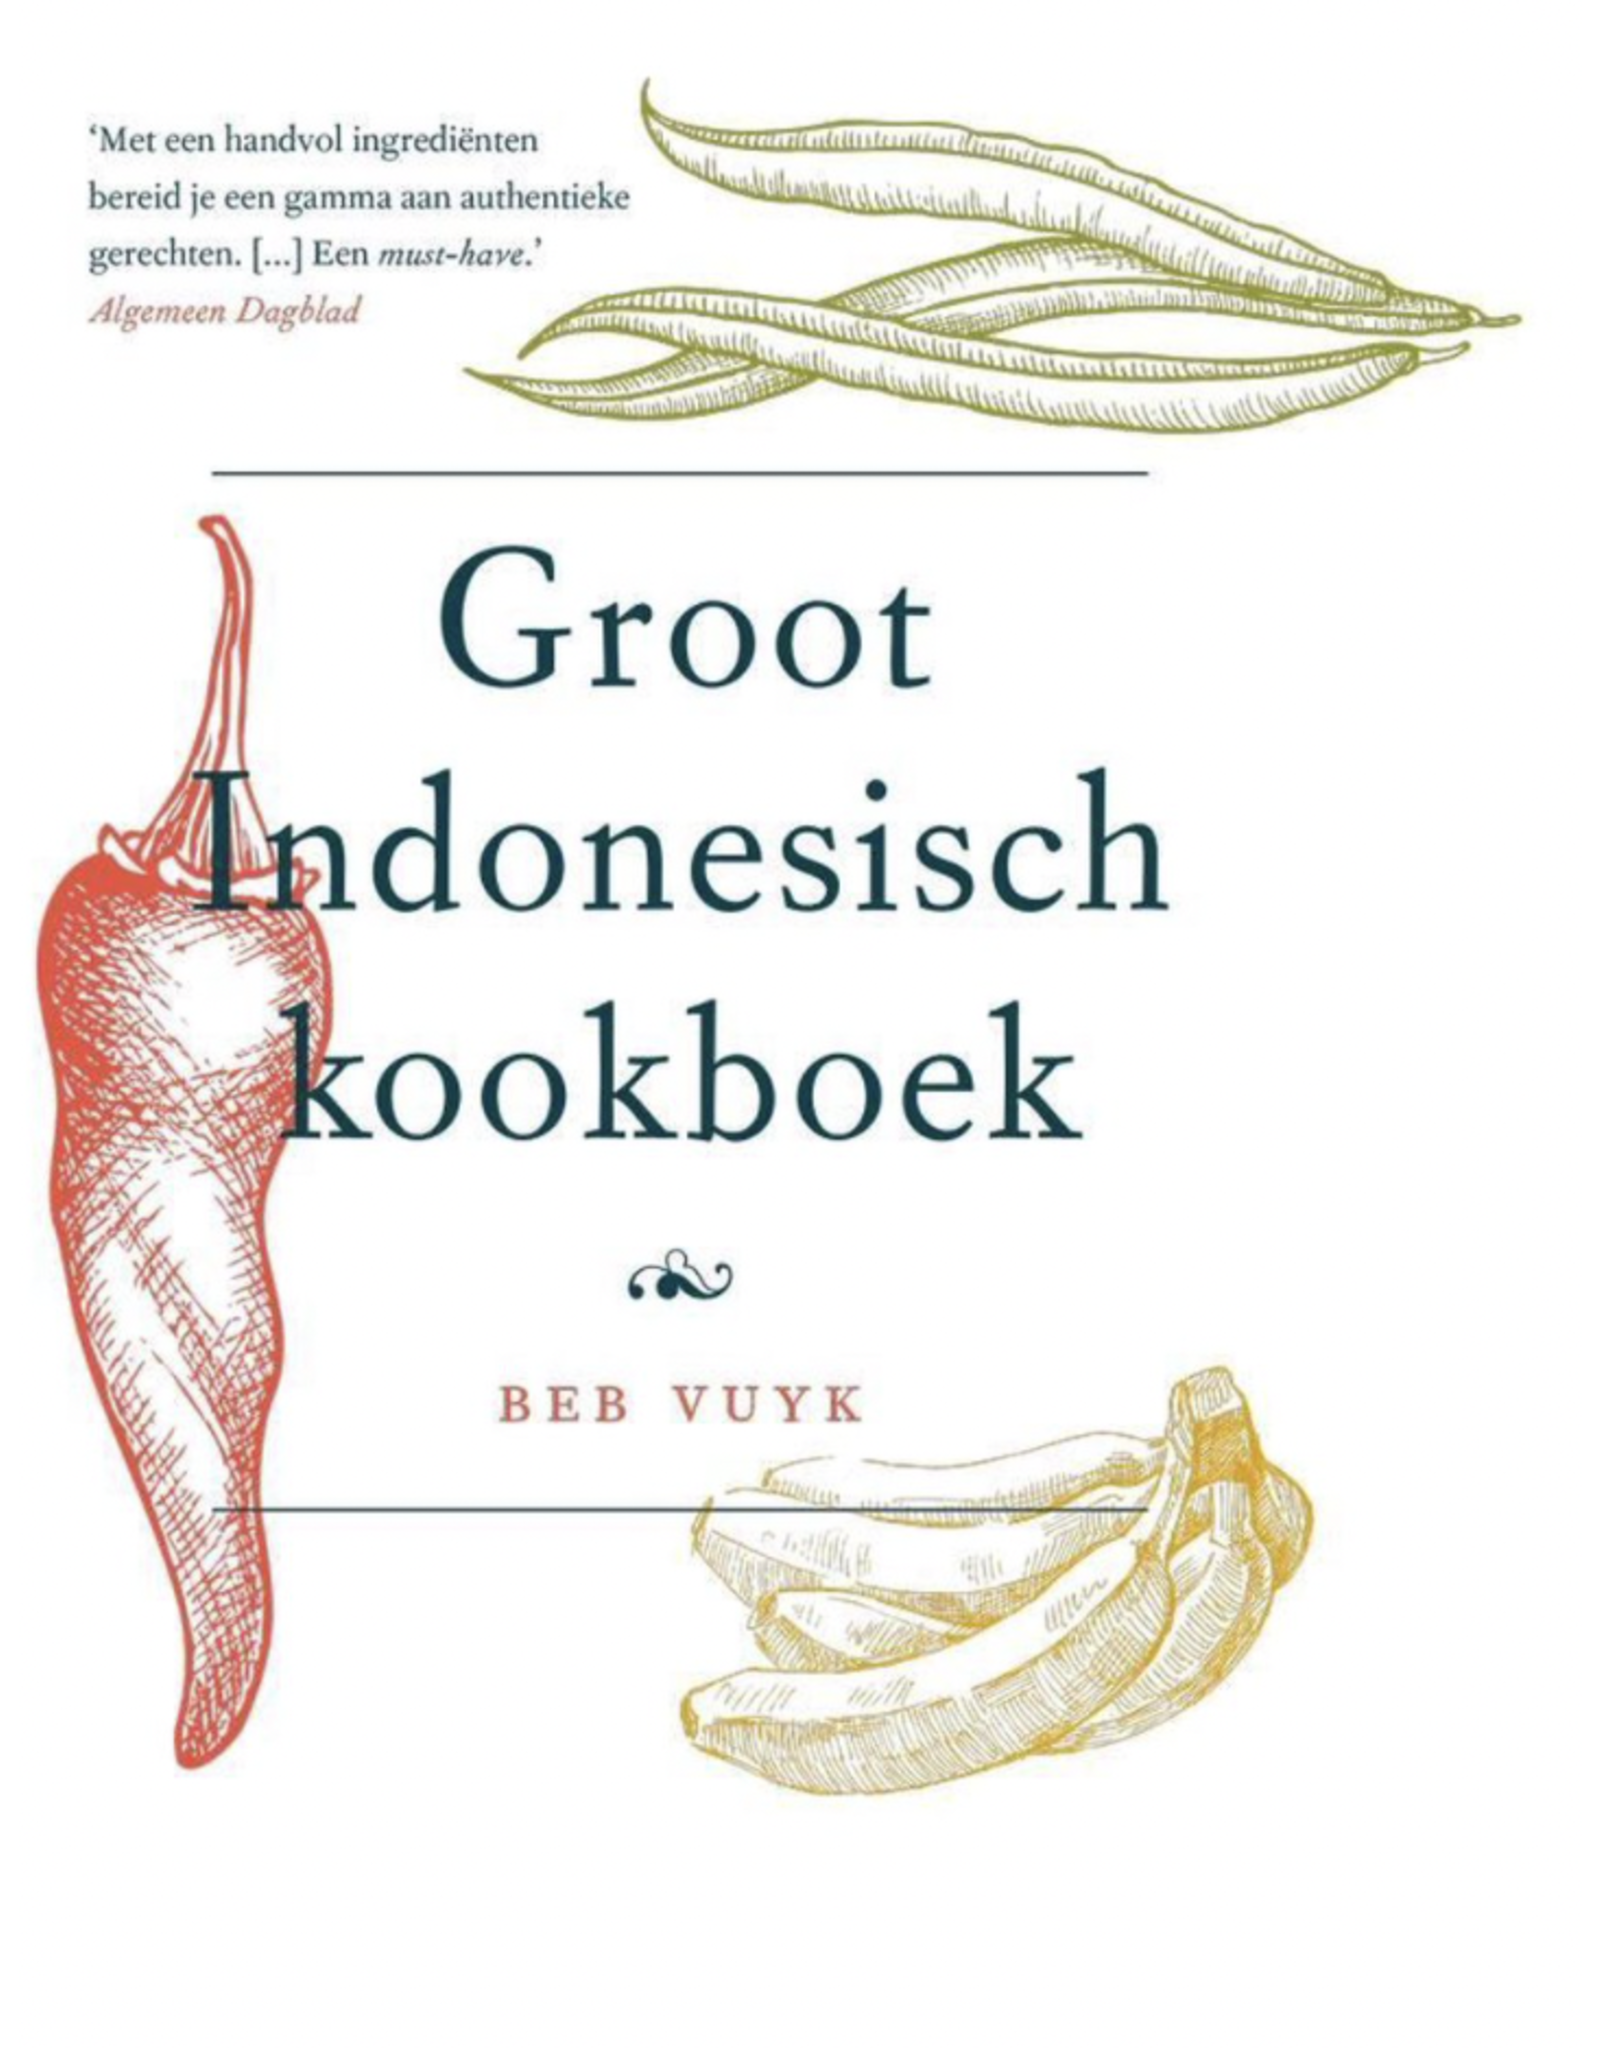 Kitchen Trend Groot indonesisch kookboek 39.99